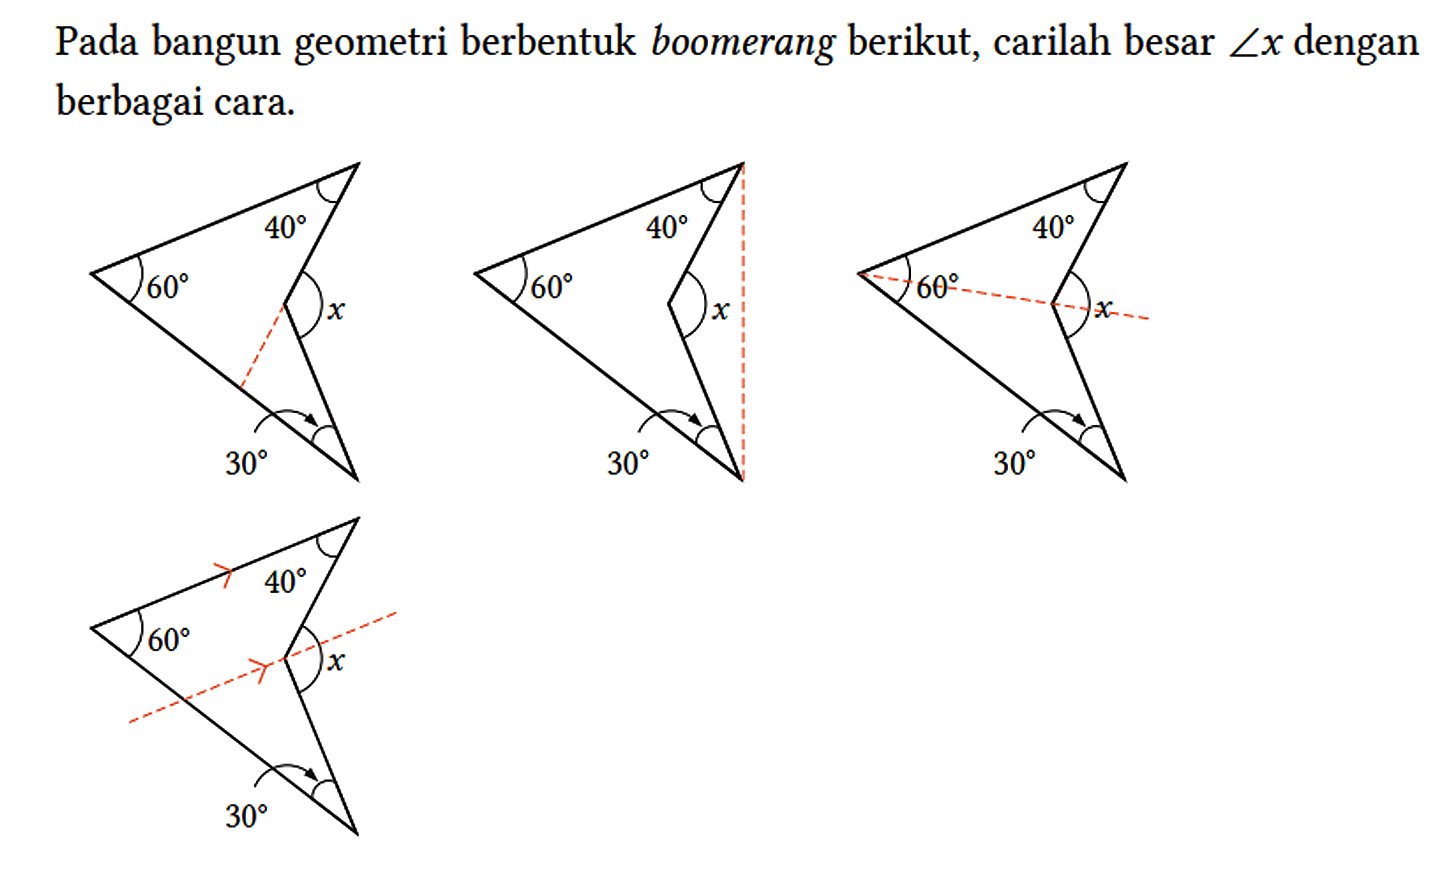 Pada bangun geometri berbentuk boomerang berikut, carilah besar sudut x dengan berbagai cara.
60 40 x 30 60 40 x 30 60 40 x 30 60 40 x 30 